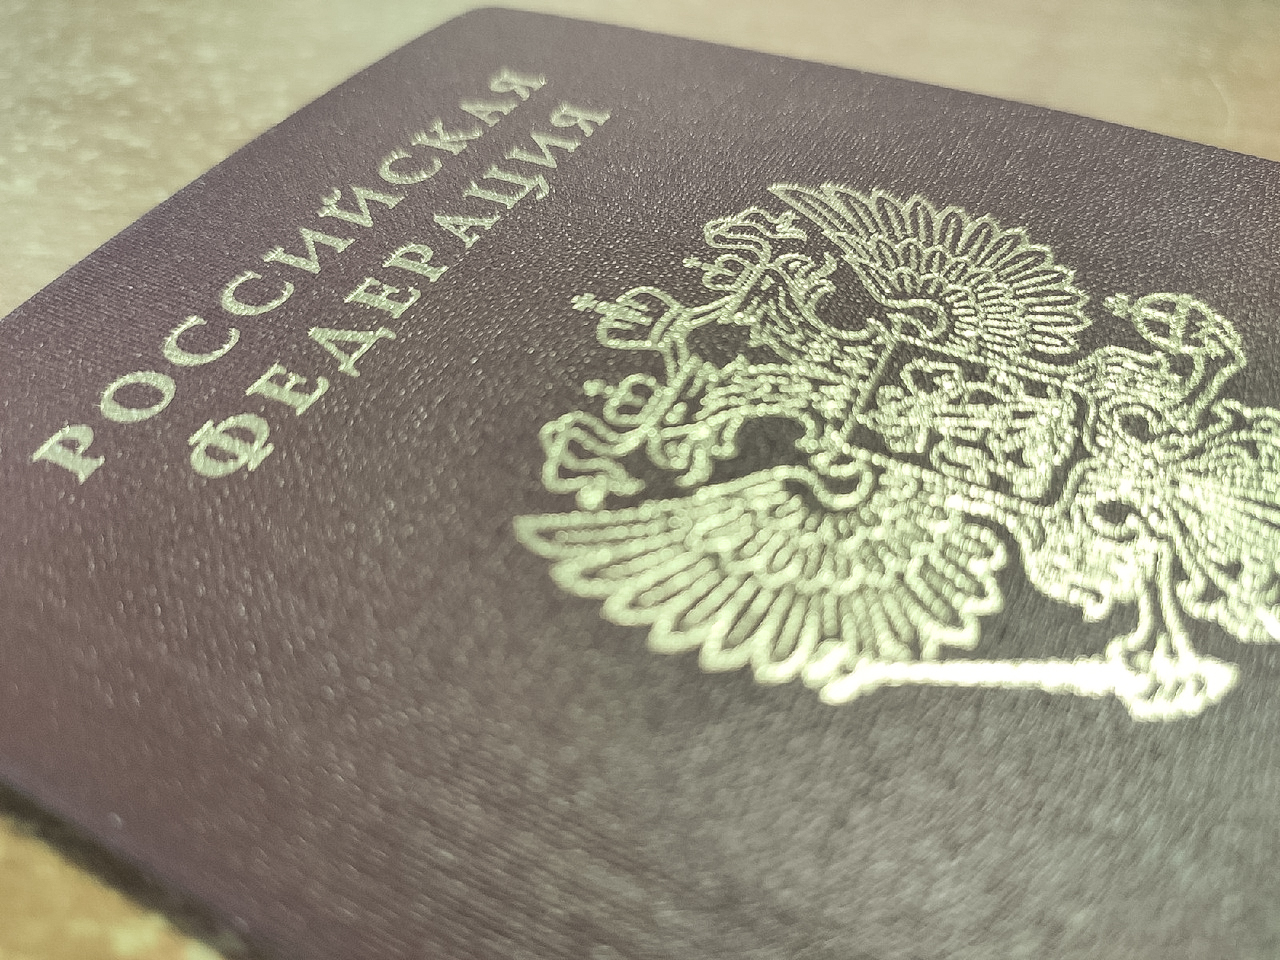 Юрист рассказал, как вернуться в Россию в случае потери паспорта